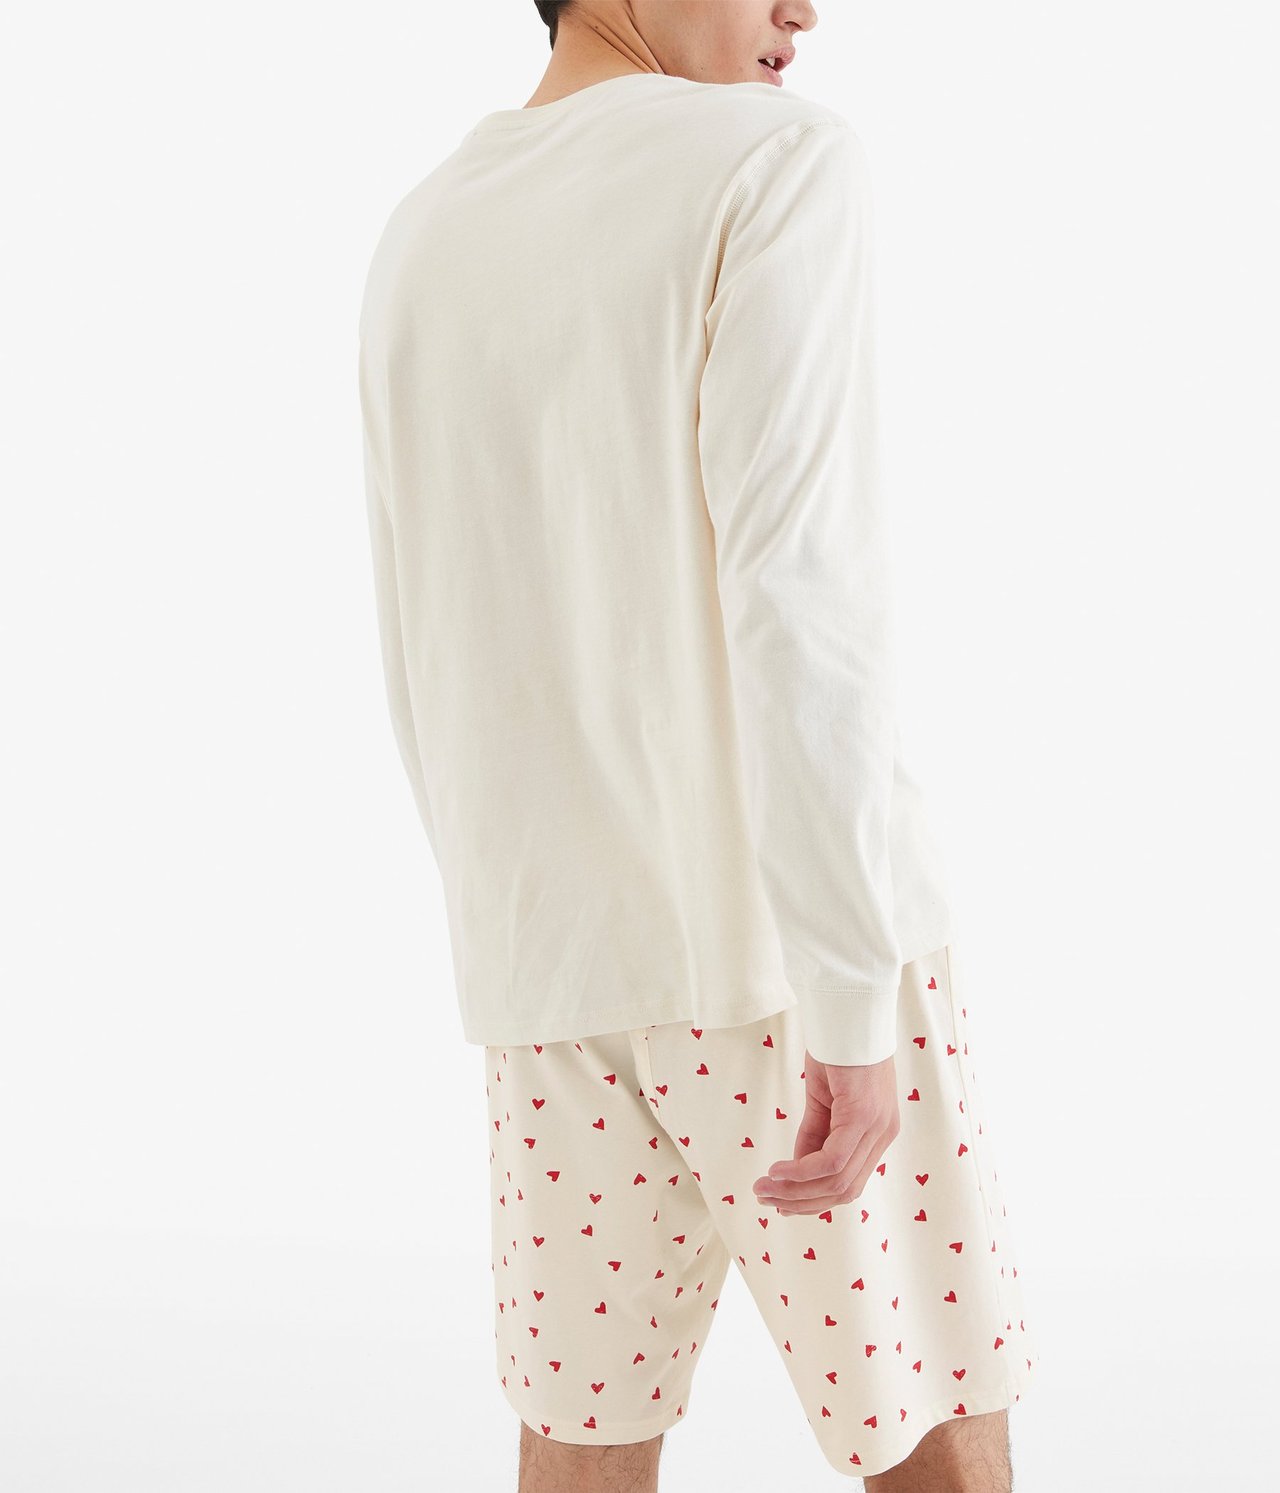 Sydänkuvioiset pyjamashortsit Luonnonvalkoinen - null - 4